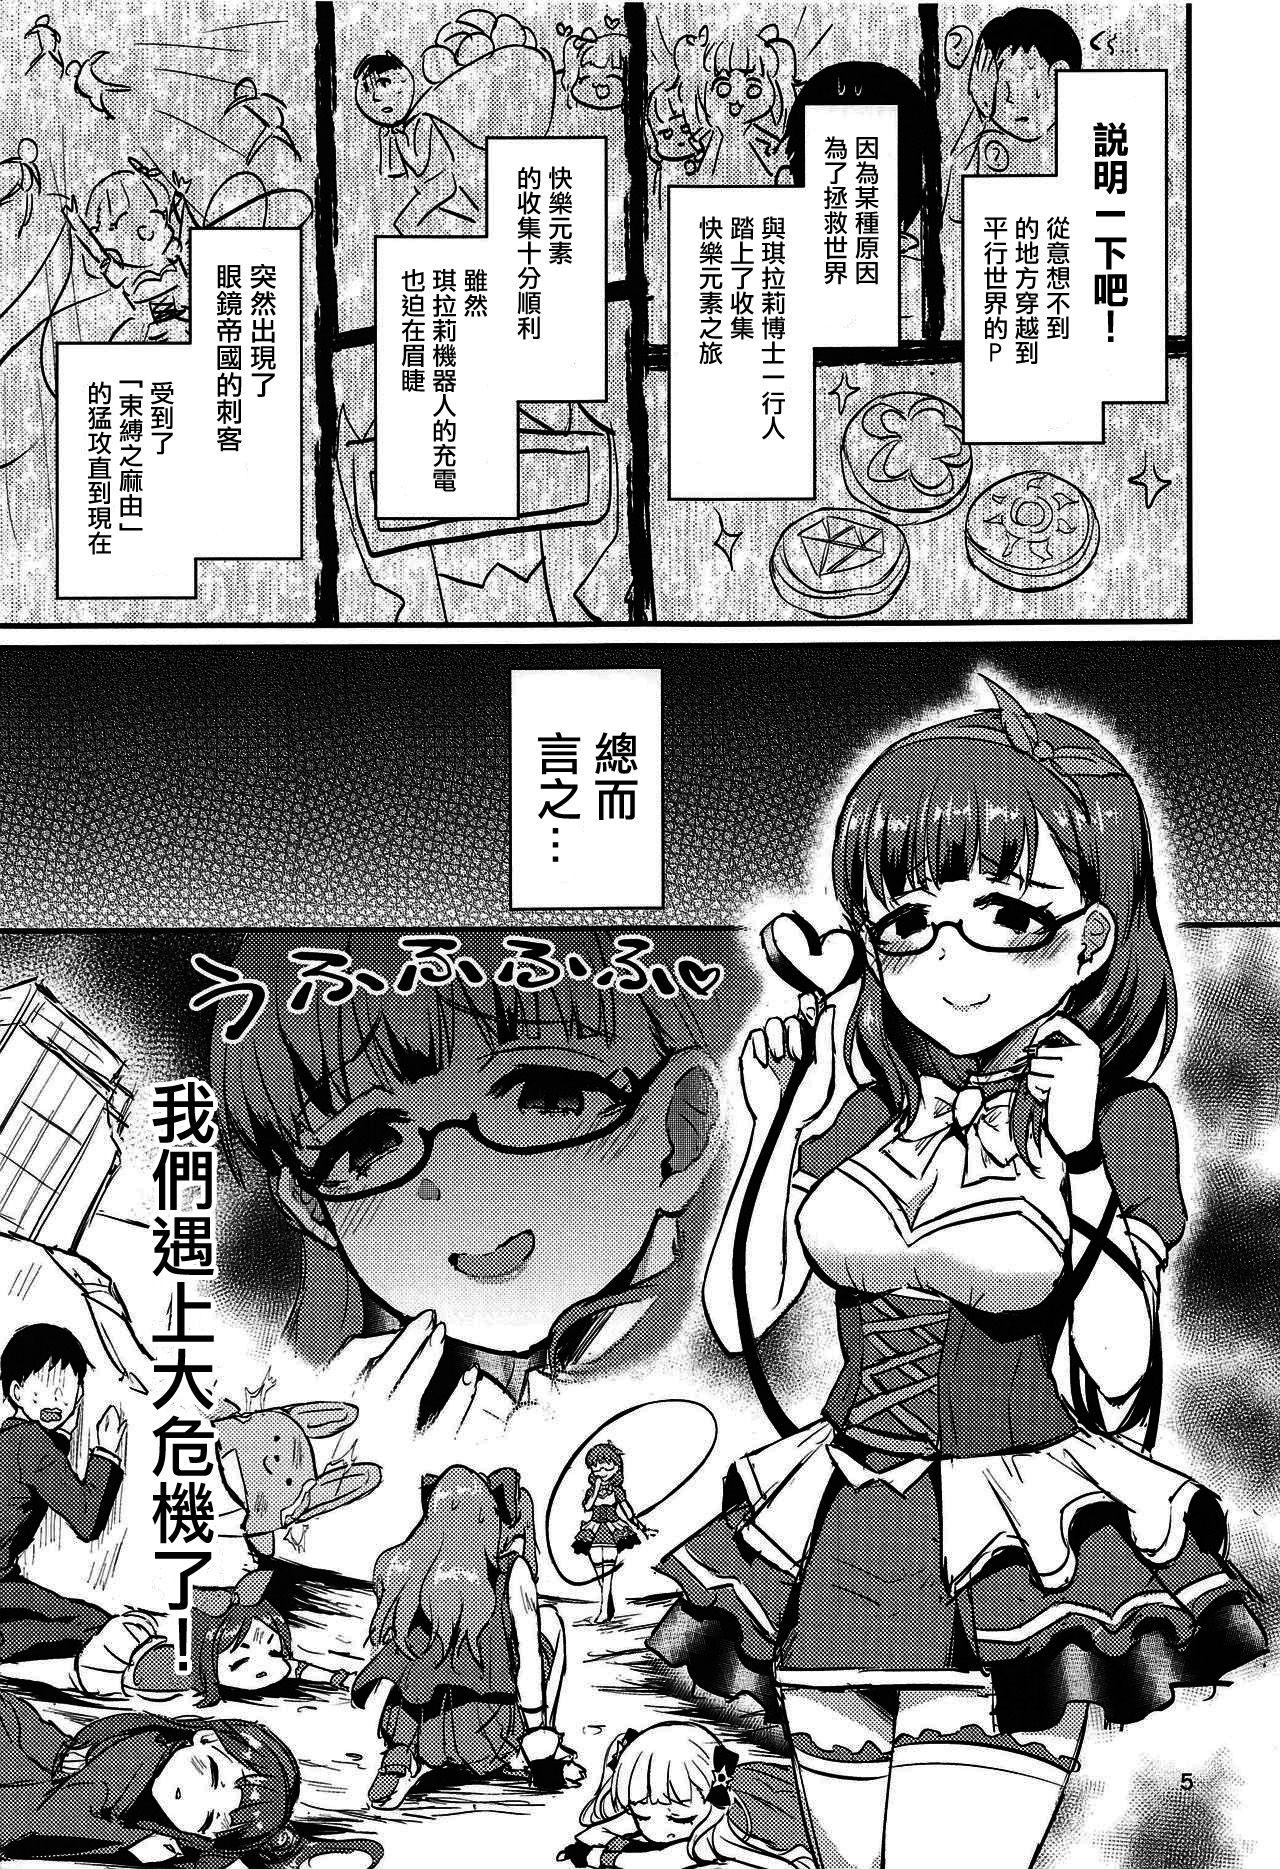 Hardcorend Mayu no Mono wa Mayu no Mono - The idolmaster Jap - Page 5